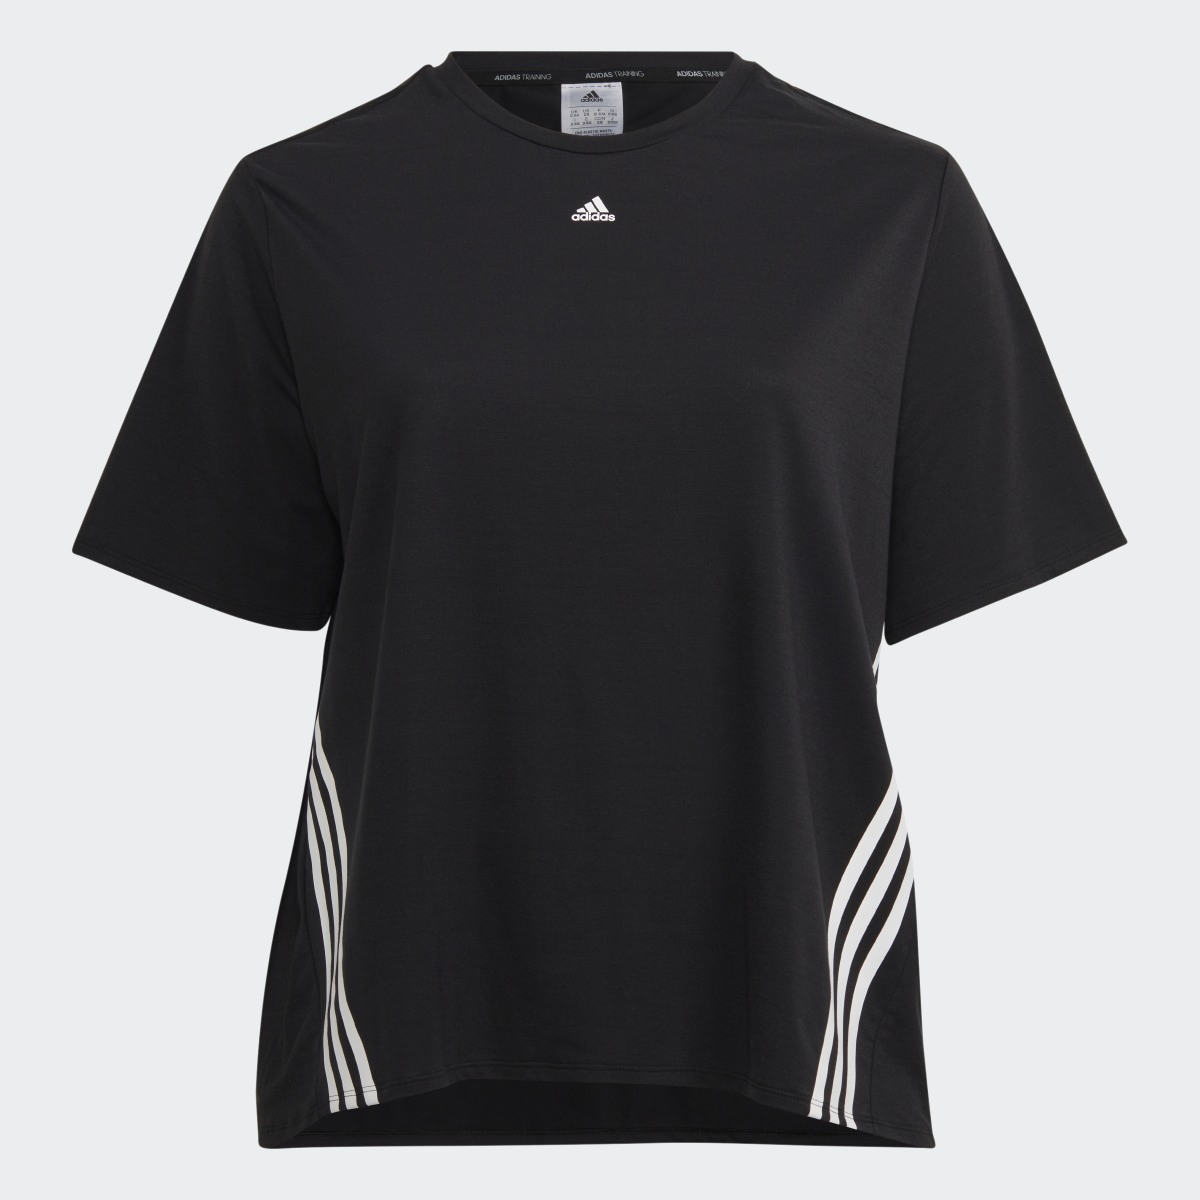 Adidas Train Icons 3-Streifen T-Shirt – Große Größen. 5